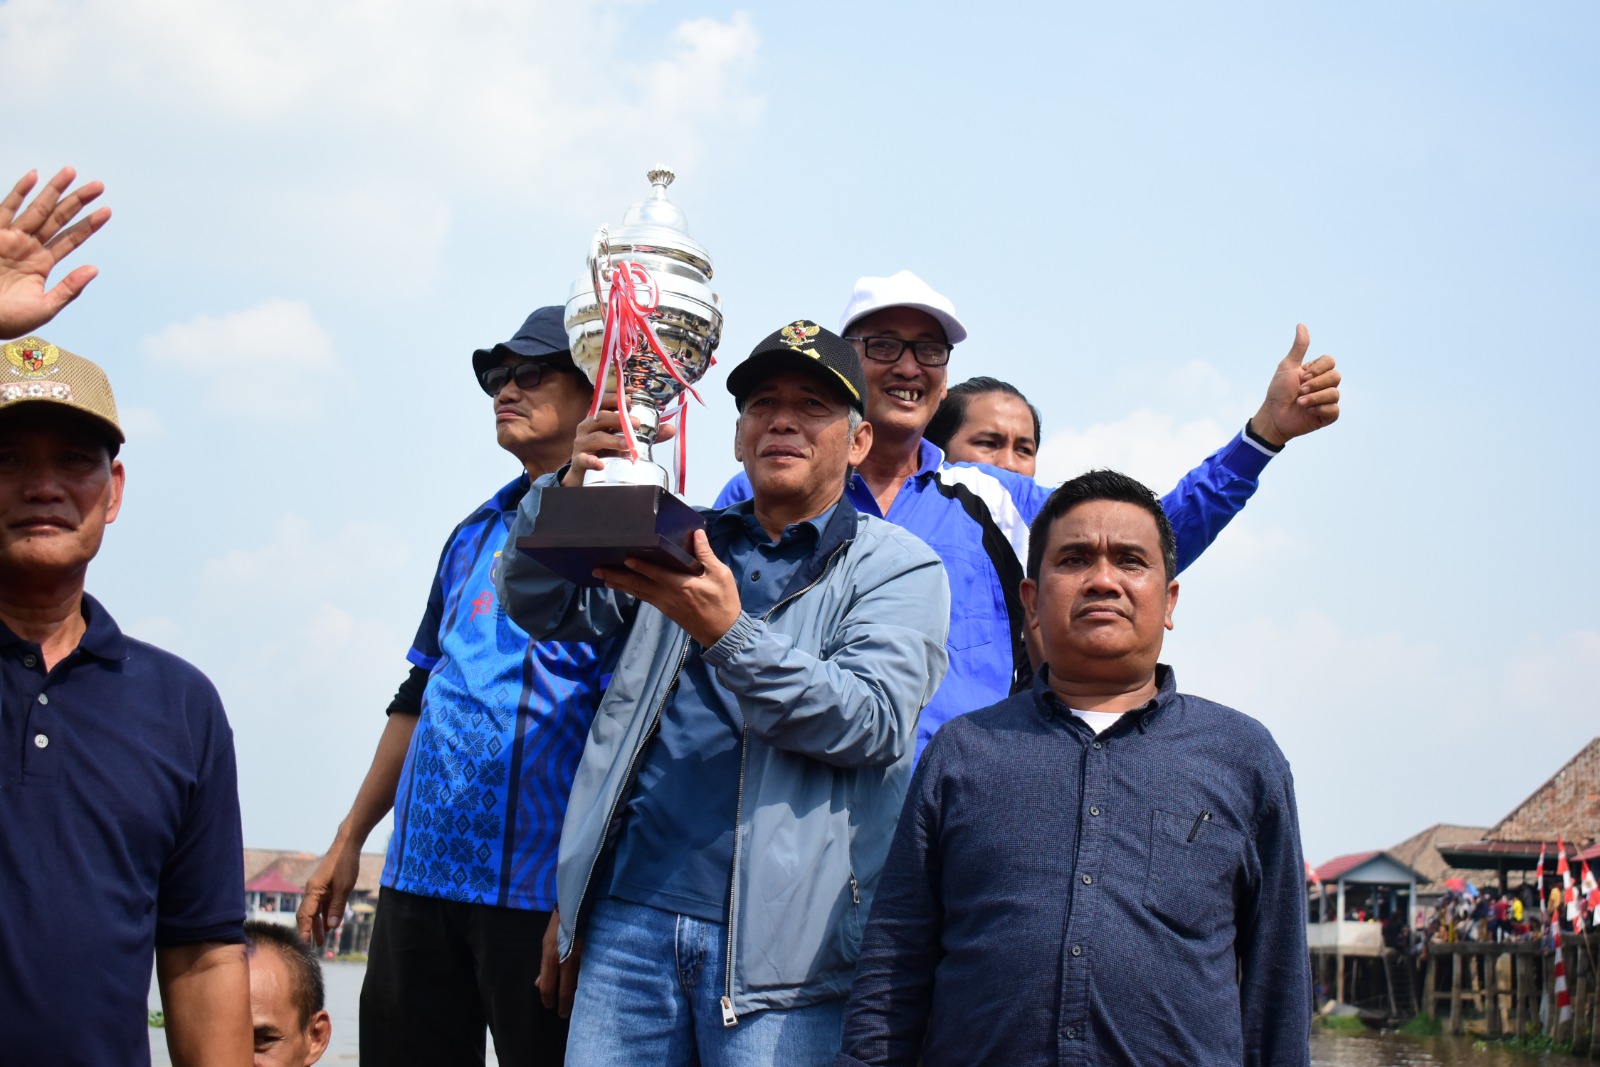 Pemenang Kebut Perahu Boyong Sapi hingga Kerbau, H Iskandar : Budaya Patut Dilestarikan Menghibur Warga